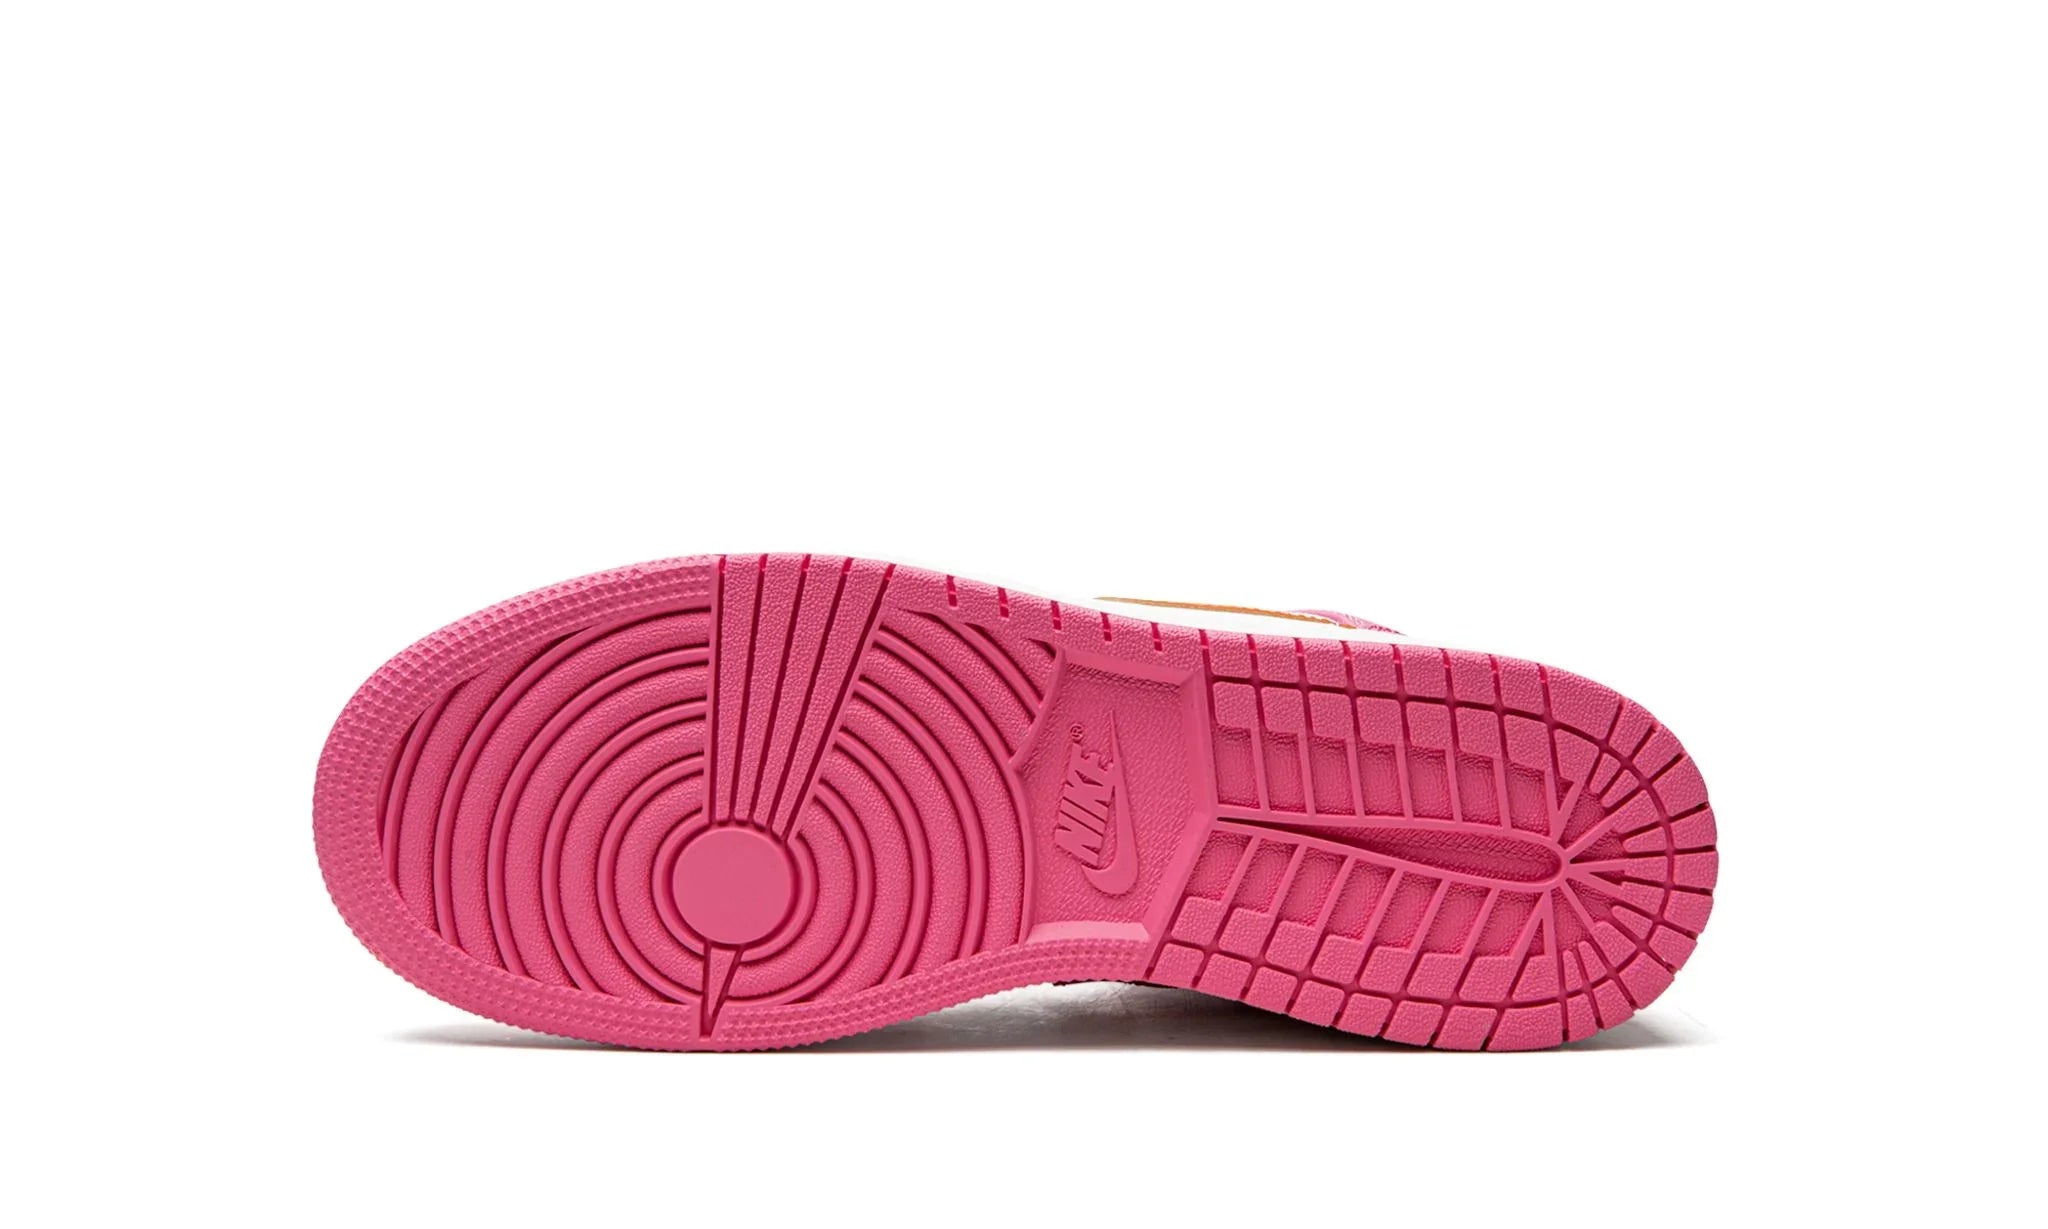 Jordan 1 Mid "Pinksicle" - DX3240-681 - Sneakers